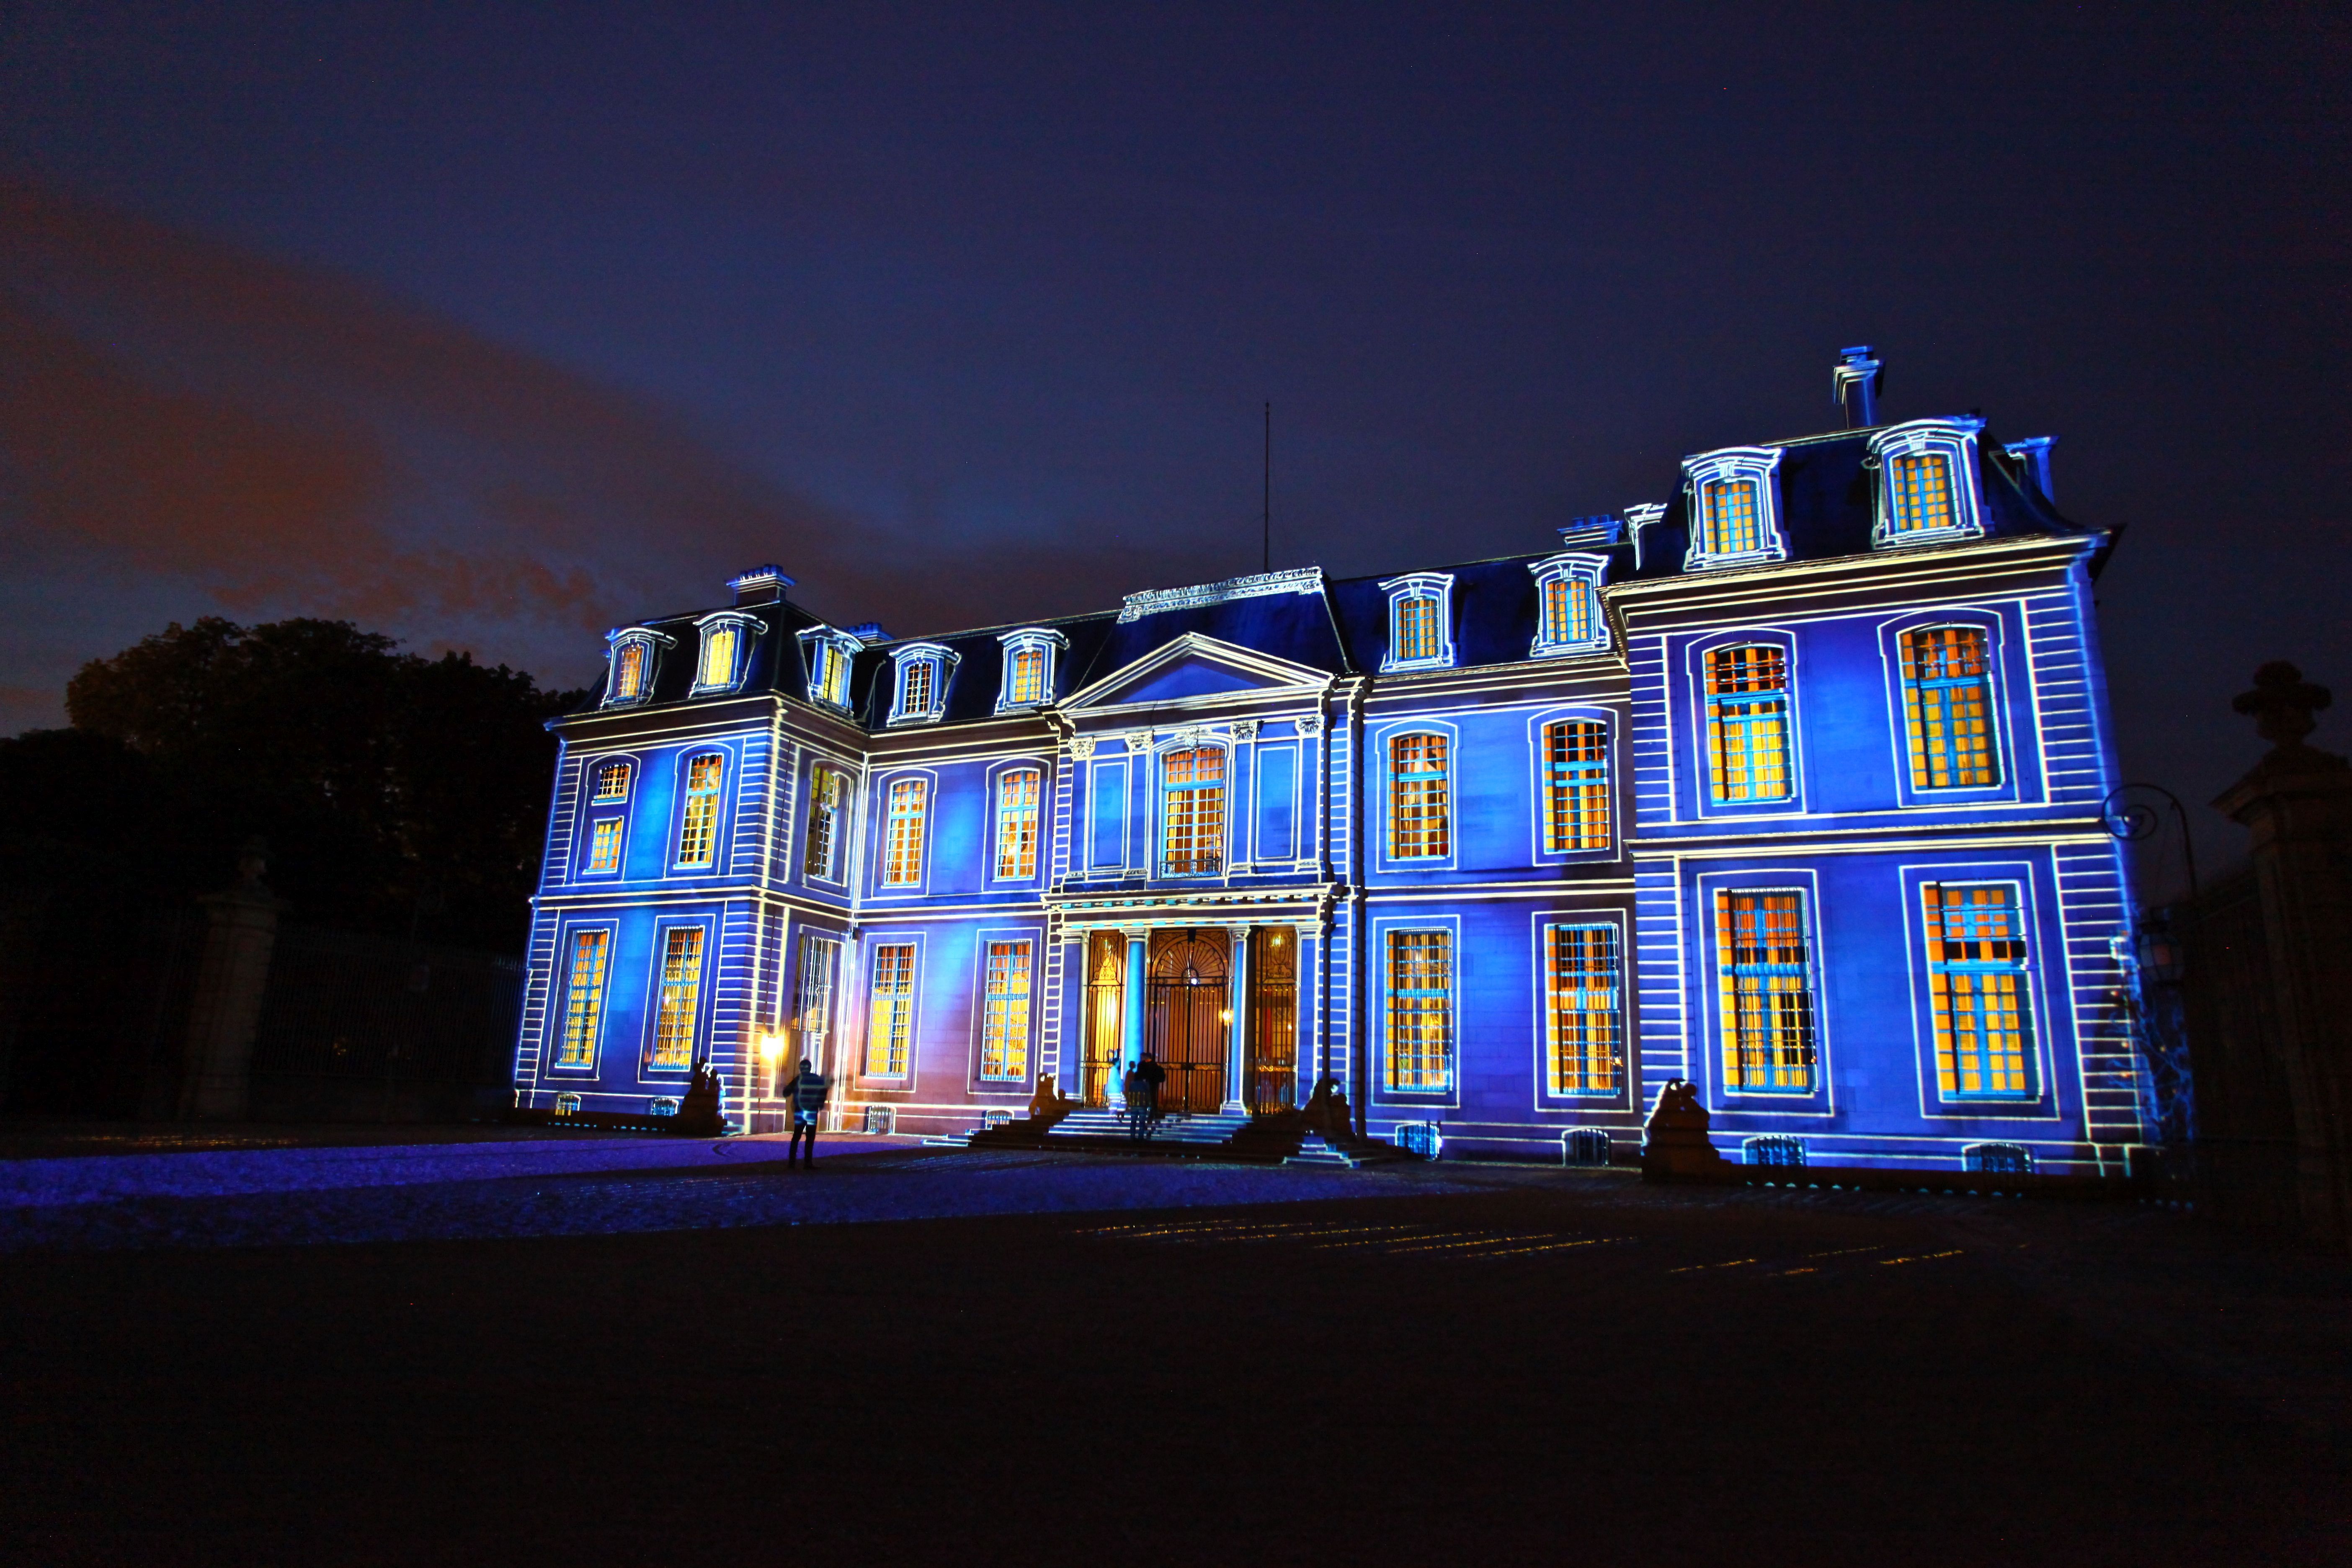 À l'occasion de la Nuit européenne des musées, le Château de Champs-sur-Marne, près de Paris, ouvre ses portes aux visiteurs proposant plusieurs animations.